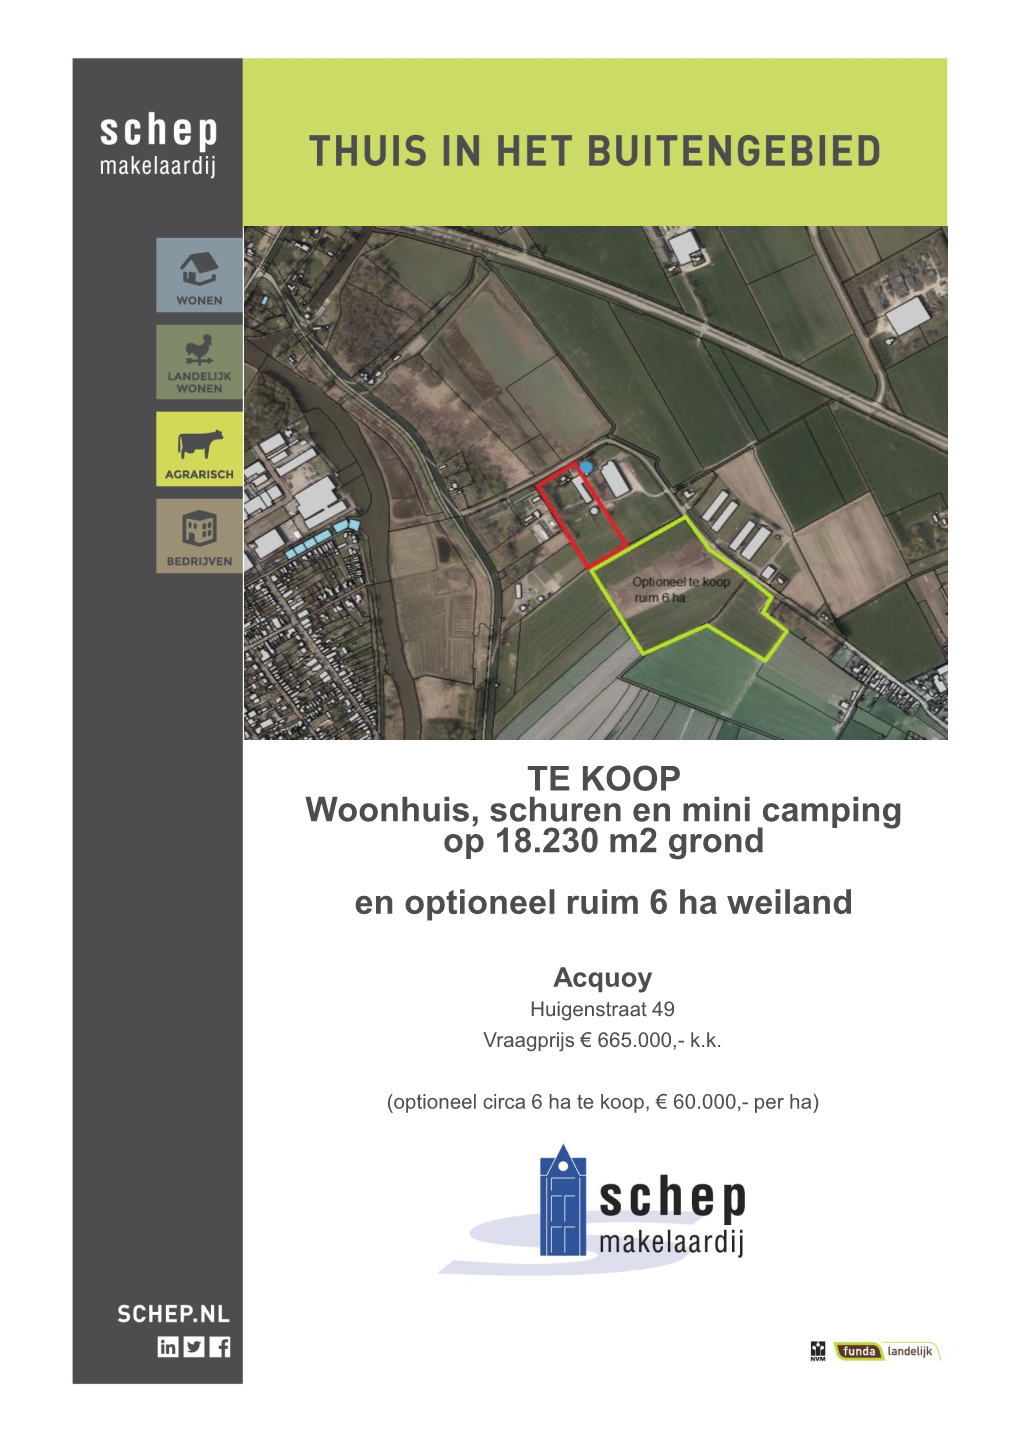 TE KOOP Woonhuis, Schuren En Mini Camping Op 18.230 M2 Grond En Optioneel Ruim 6 Ha Weiland